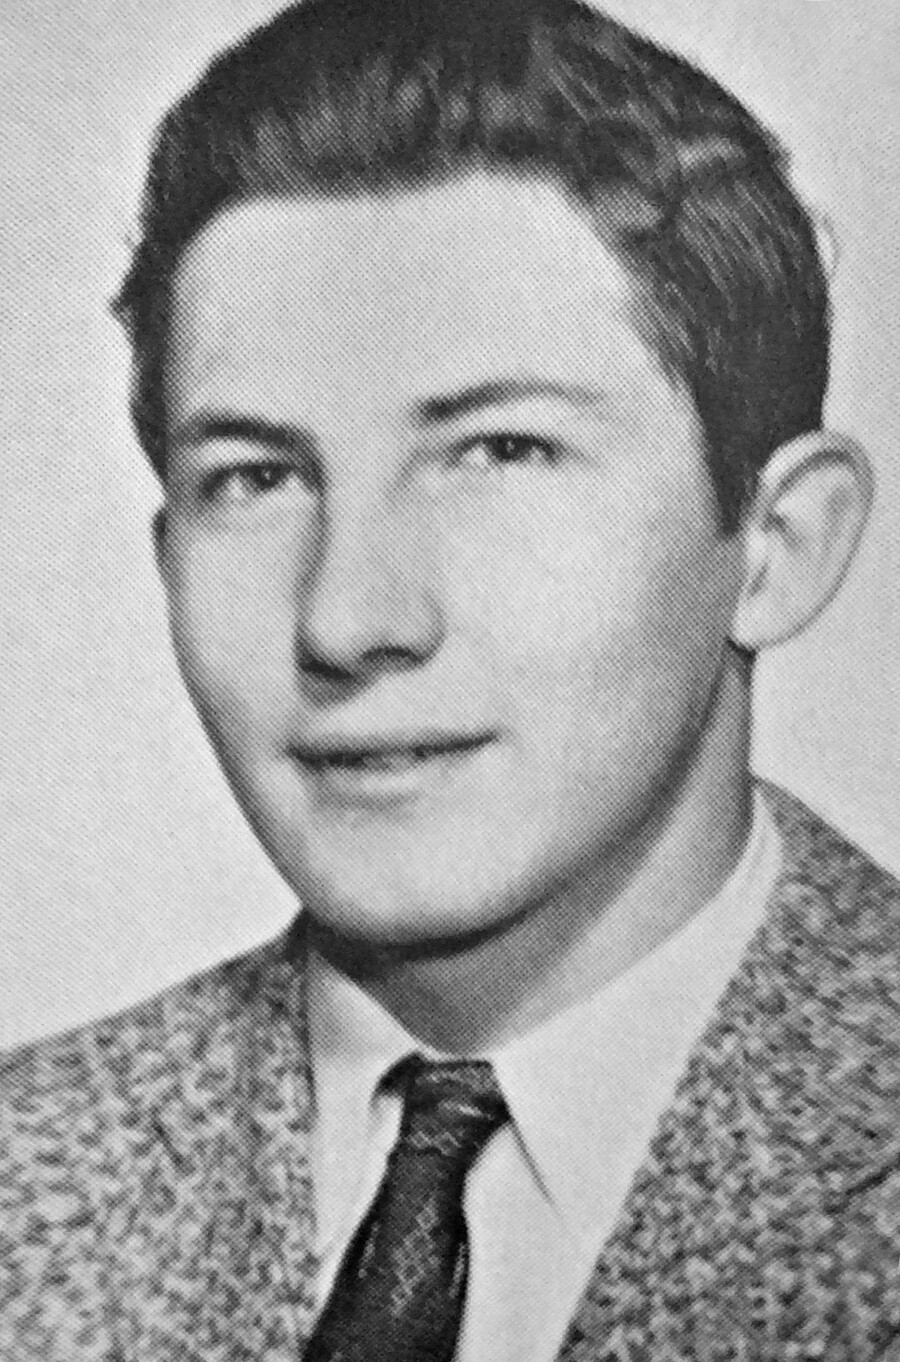 Aldrich Ames muda dalam buku tahunan SMA McLean tahun 1958.